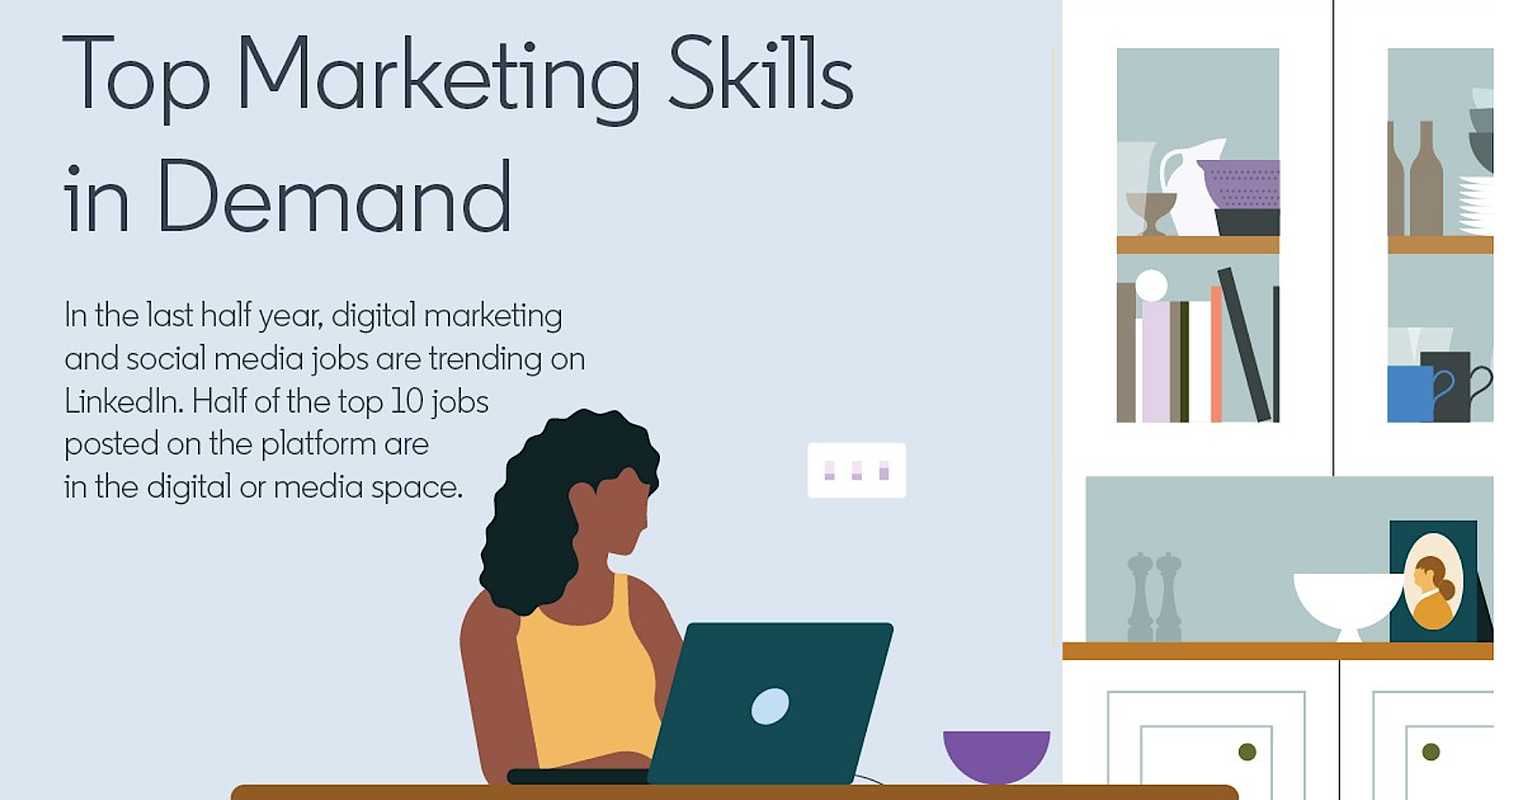 LinkedIn Lists Top 10 In-Demand Marketing Skills